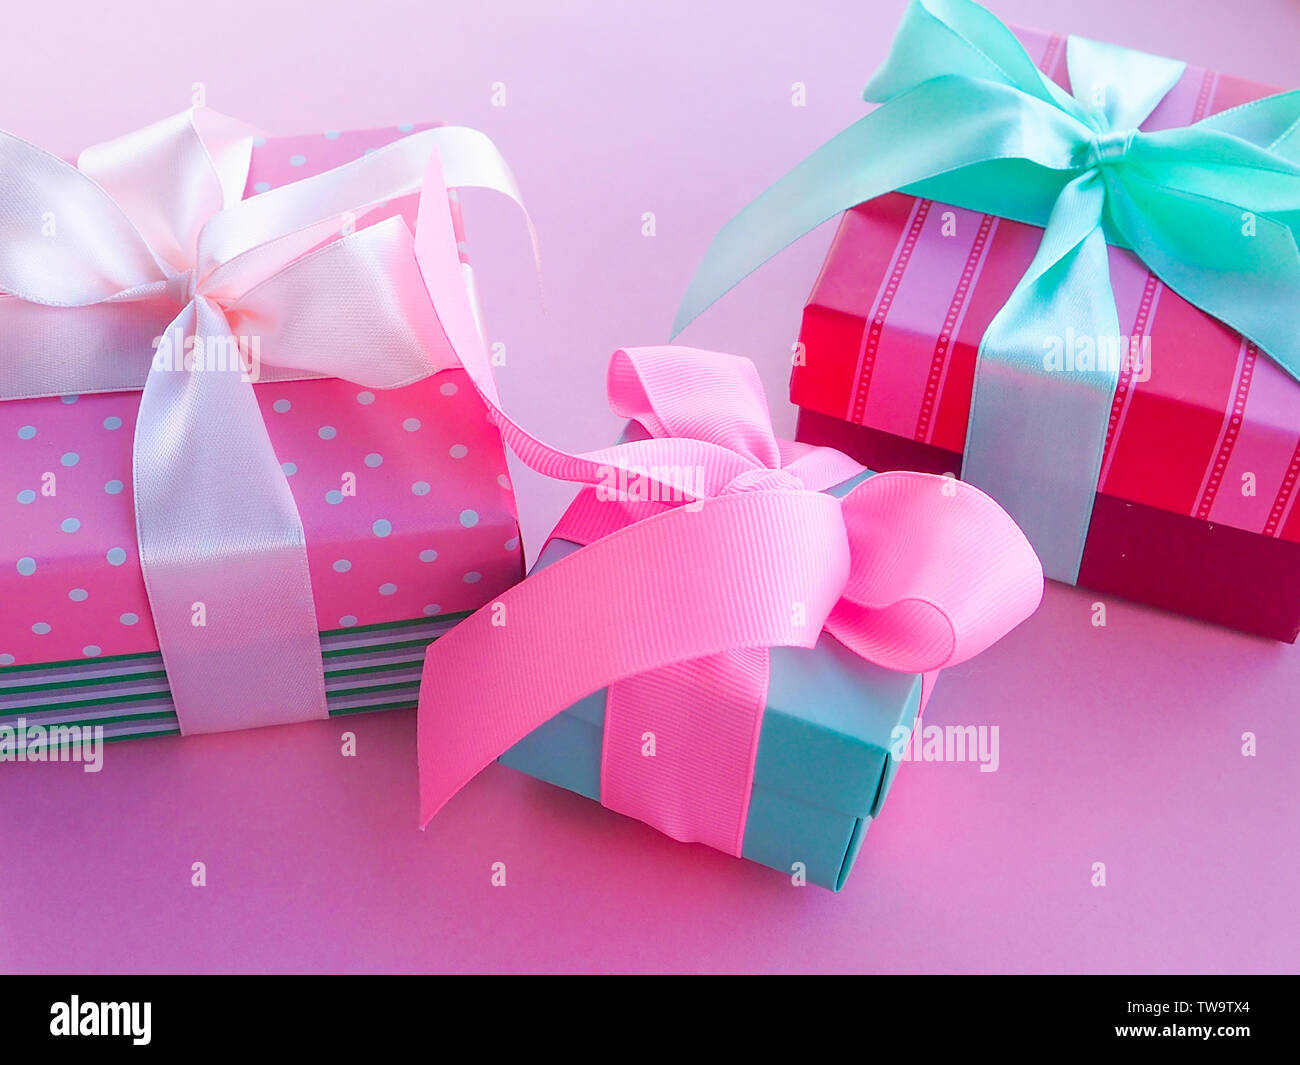 Geschenkbox mit bunten Satinband, rosa Hintergrund, Grüße zum Tag der Frauen,  Muttertag, Valentinstag, Geburtstag, Weihnachten, Platz für Text  Stockfotografie - Alamy